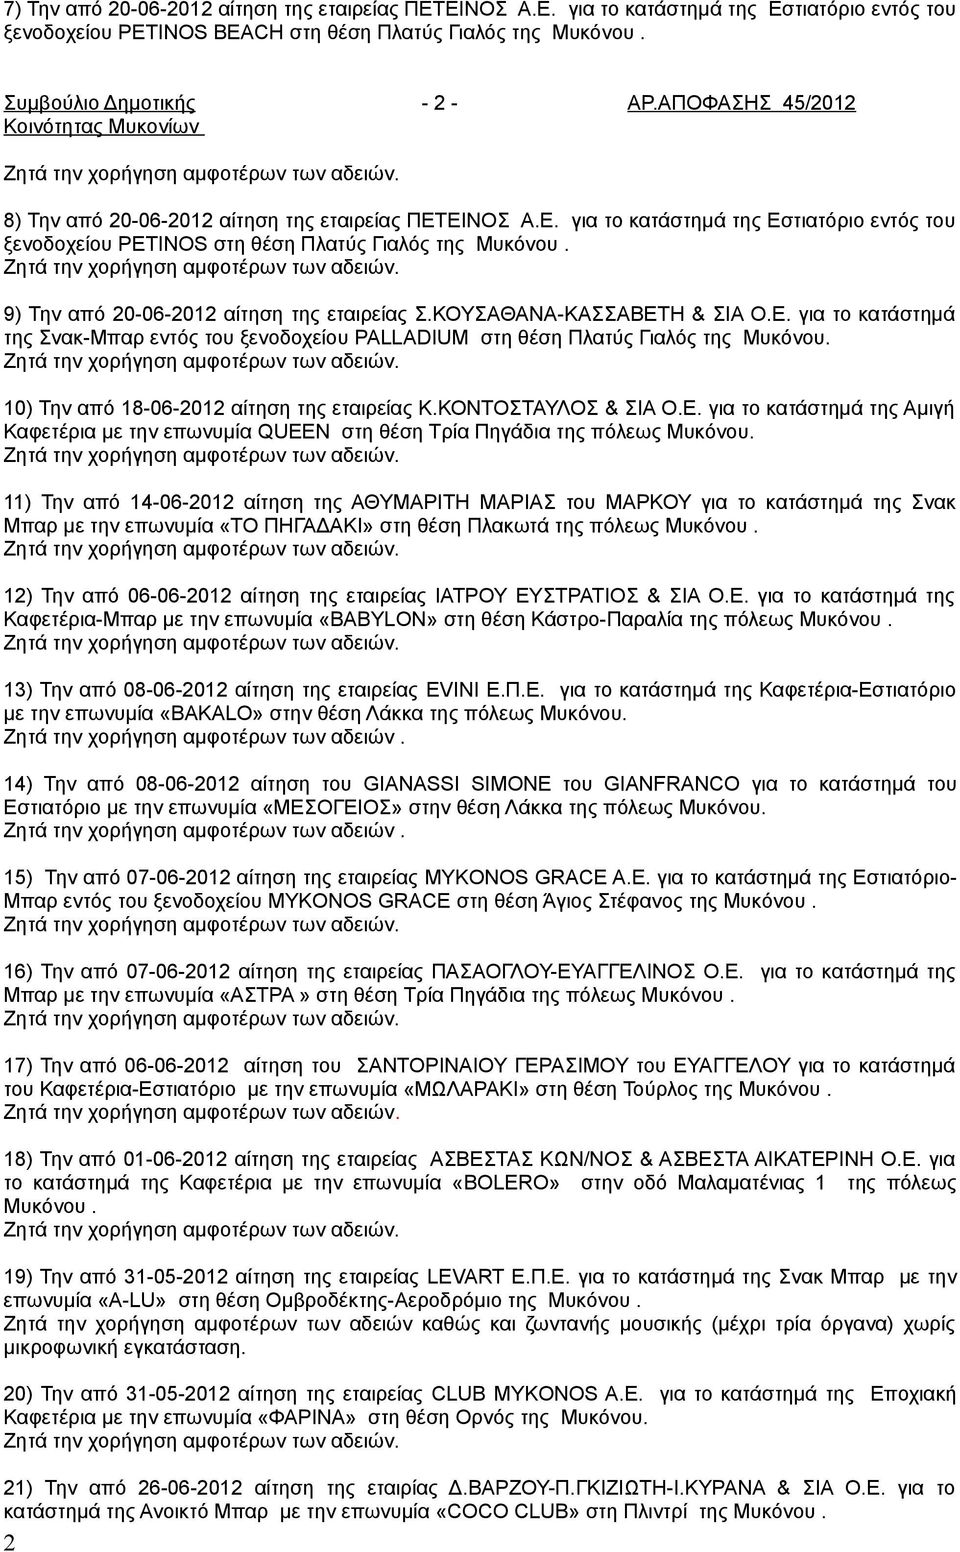 9) Την από 20-06-2012 αίτηση της εταιρείας Σ.ΚΟΥΣΑΘΑΝΑ-ΚΑΣΣΑΒΕΤΗ & ΣΙΑ Ο.Ε. για το κατάστημά της Σνακ-Μπαρ εντός του ξενοδοχείου PALLADIUM στη θέση Πλατύς Γιαλός της Μυκόνου.